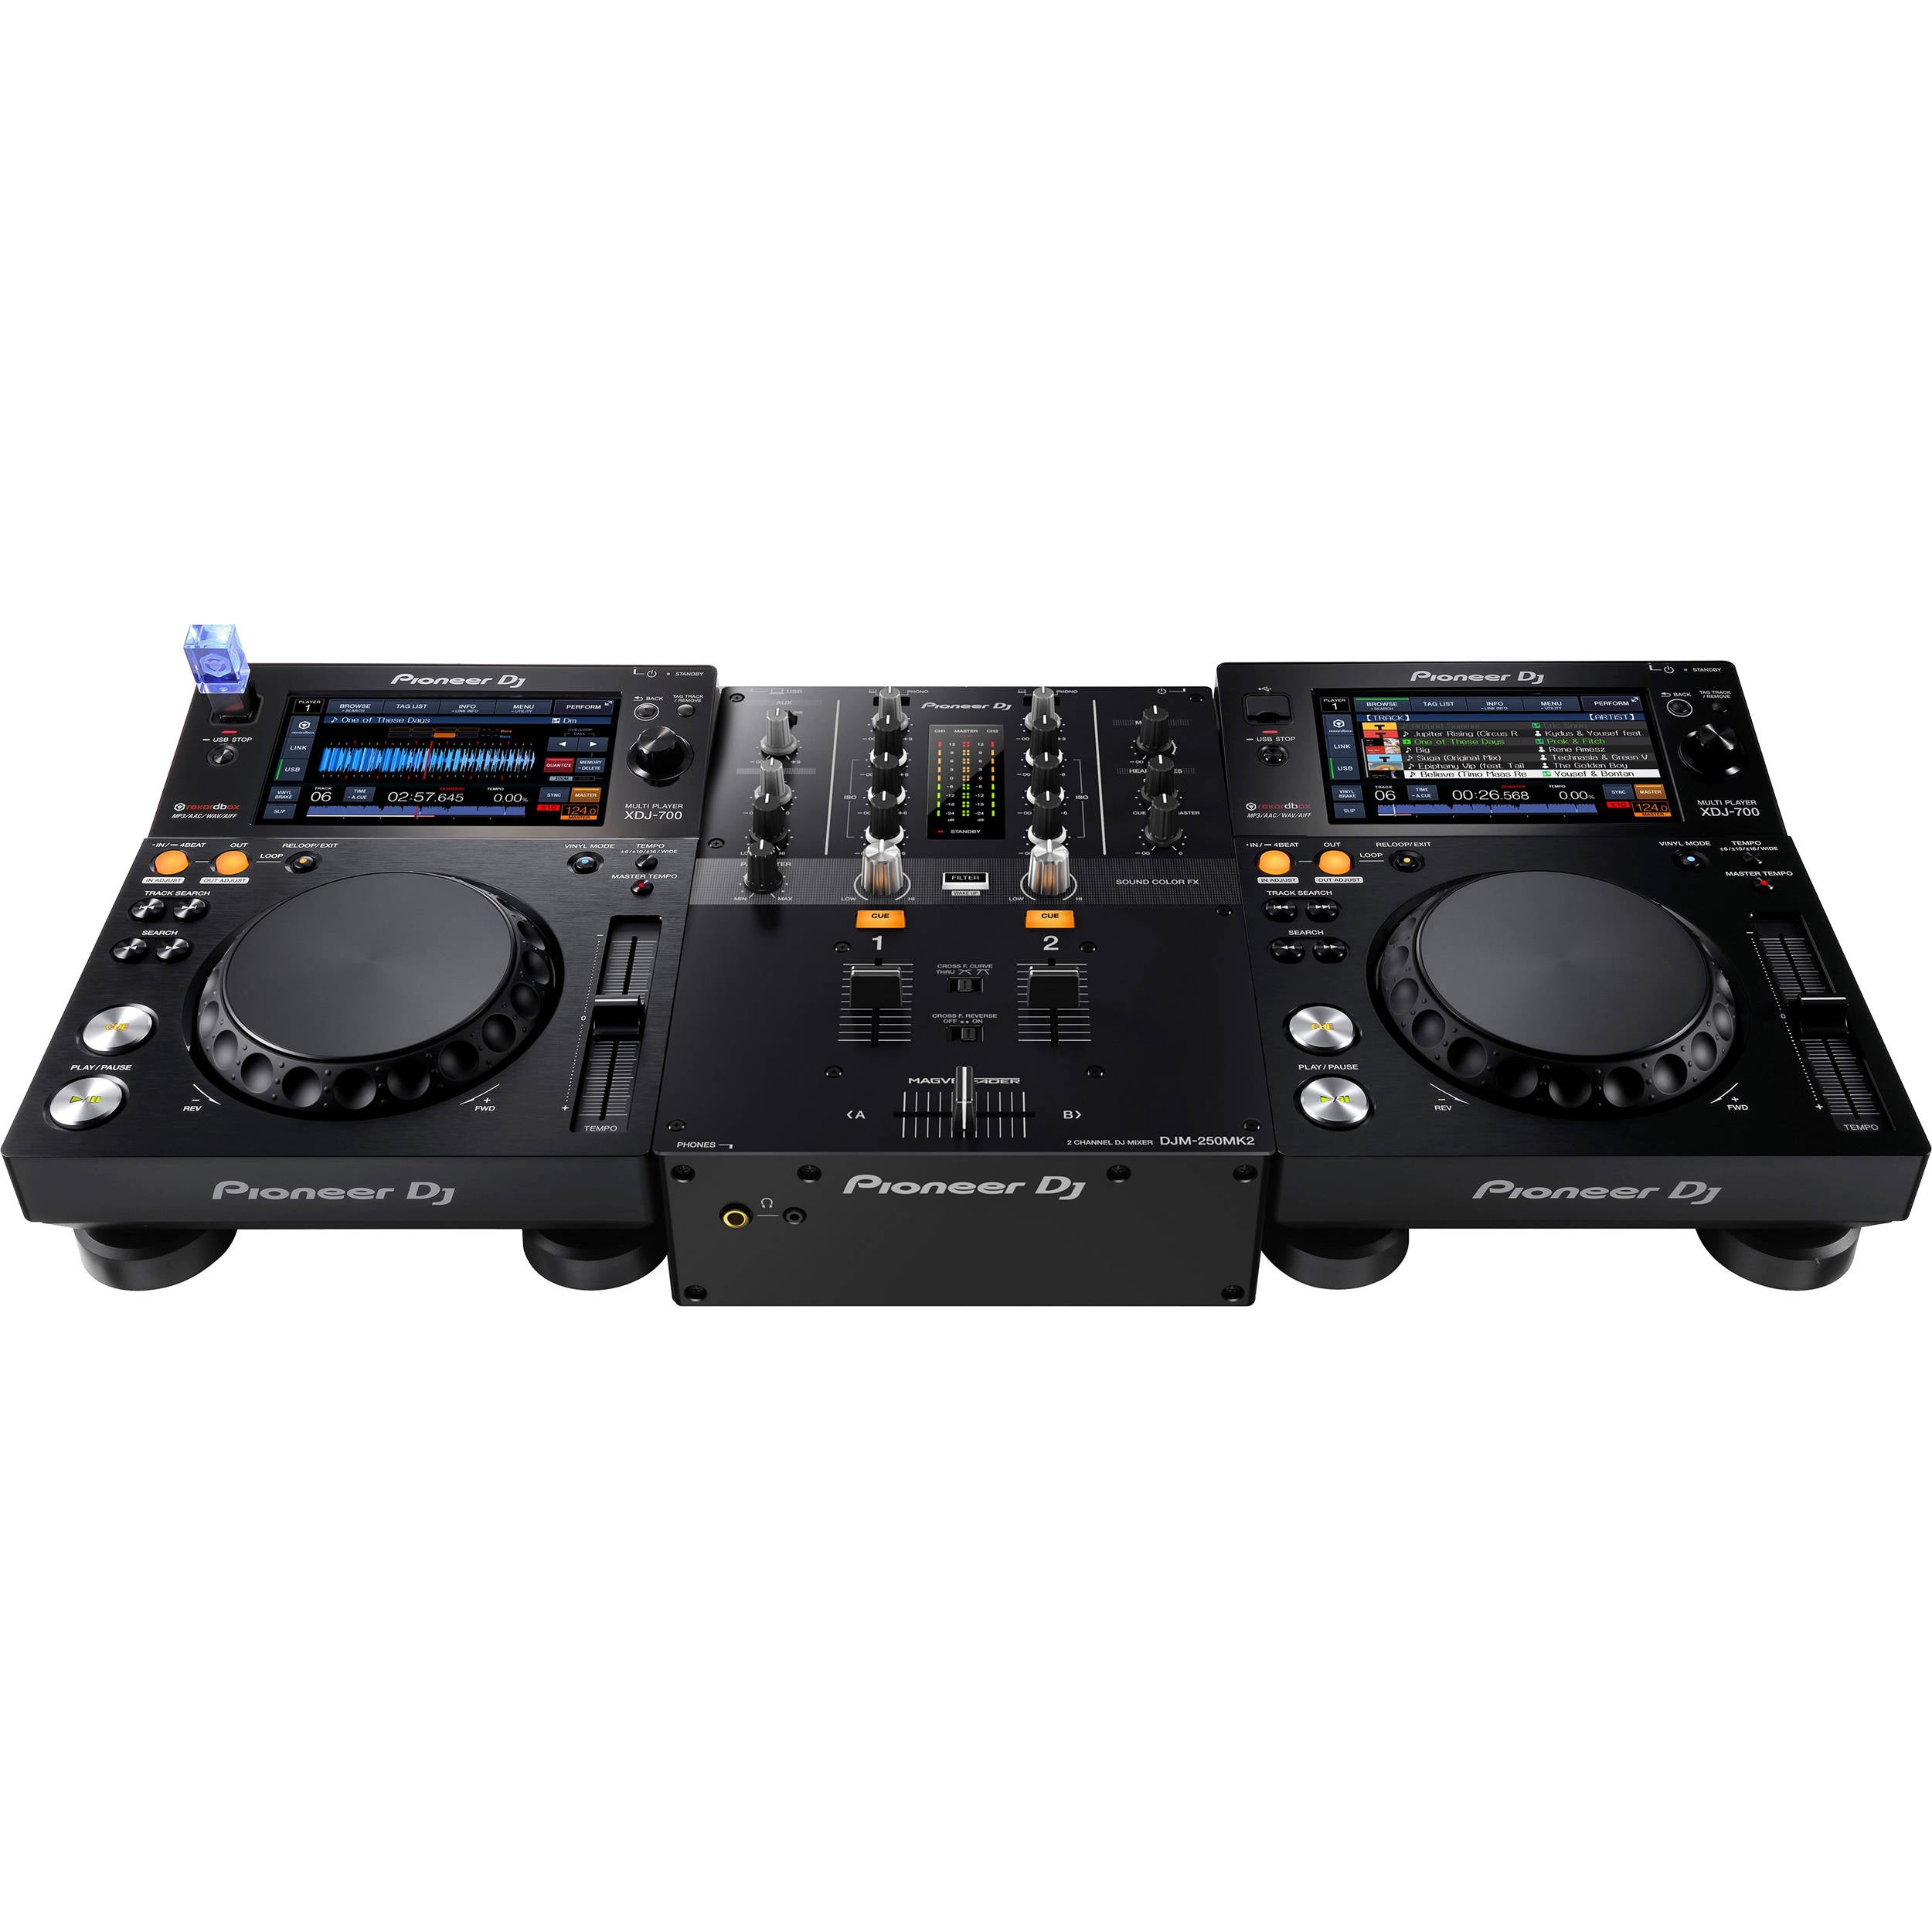 Pioneer DJM-250MK2 2-Ch DJ Mixer with Rekordbox DJ & DVS | NZ – Mix